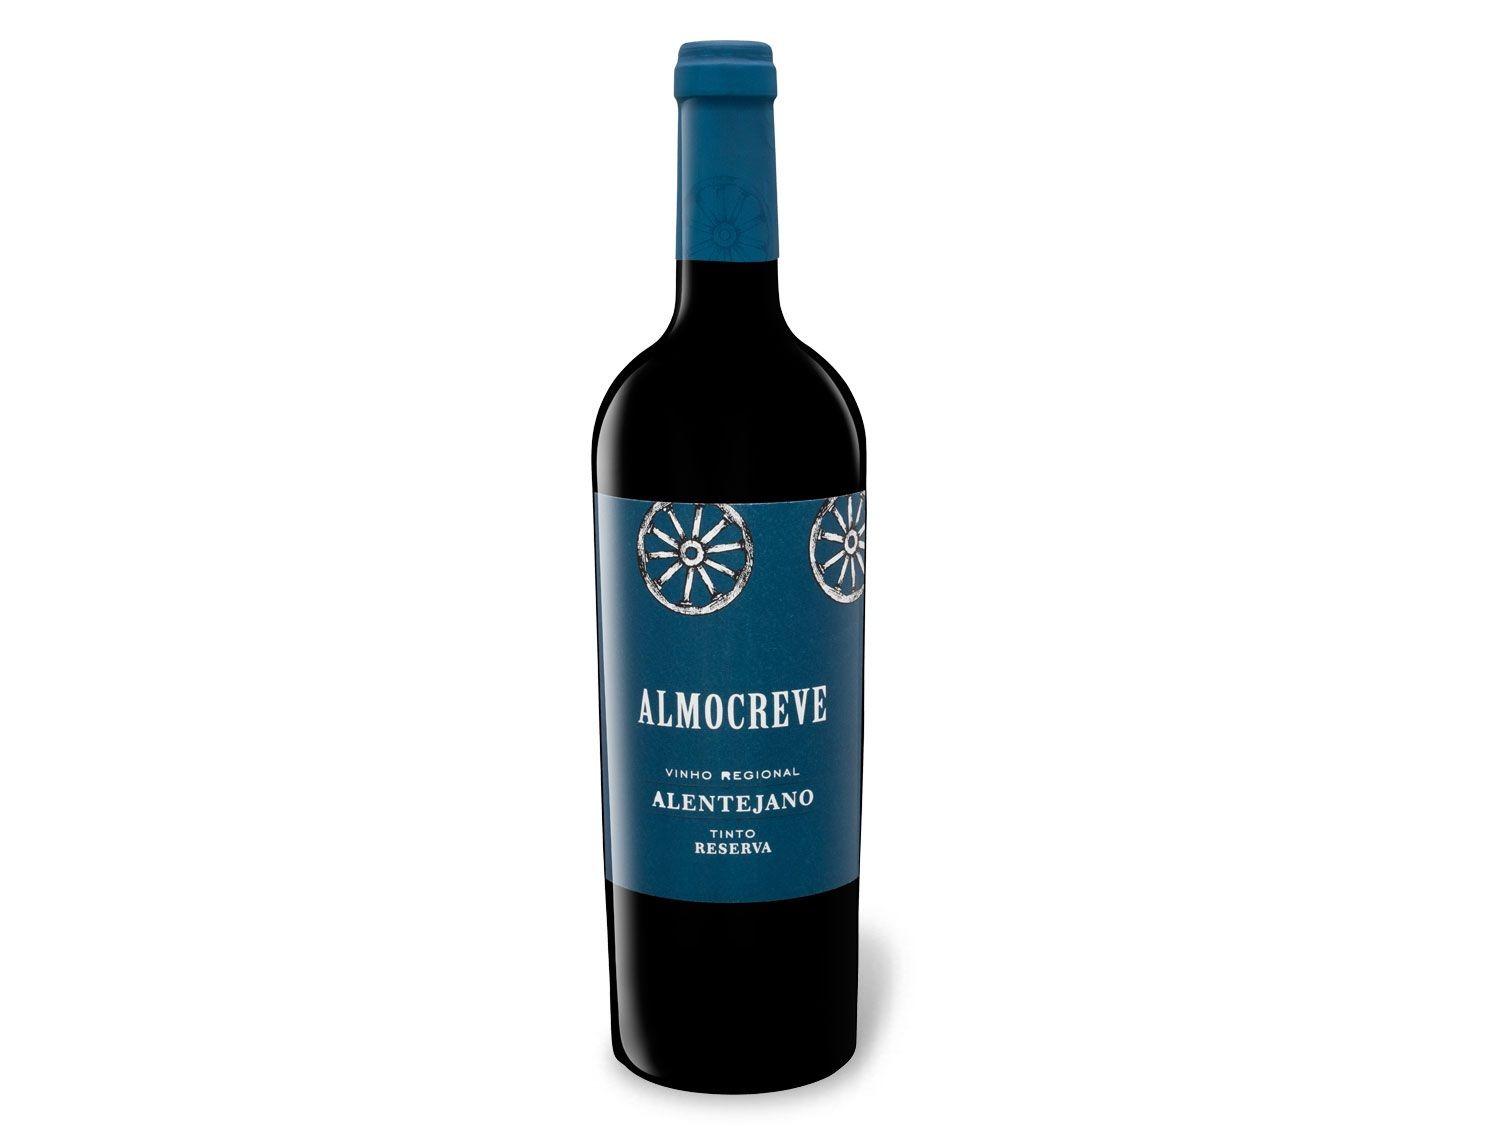 Almocreve Reserva halbtrocke… Regional Vinho Alentejano